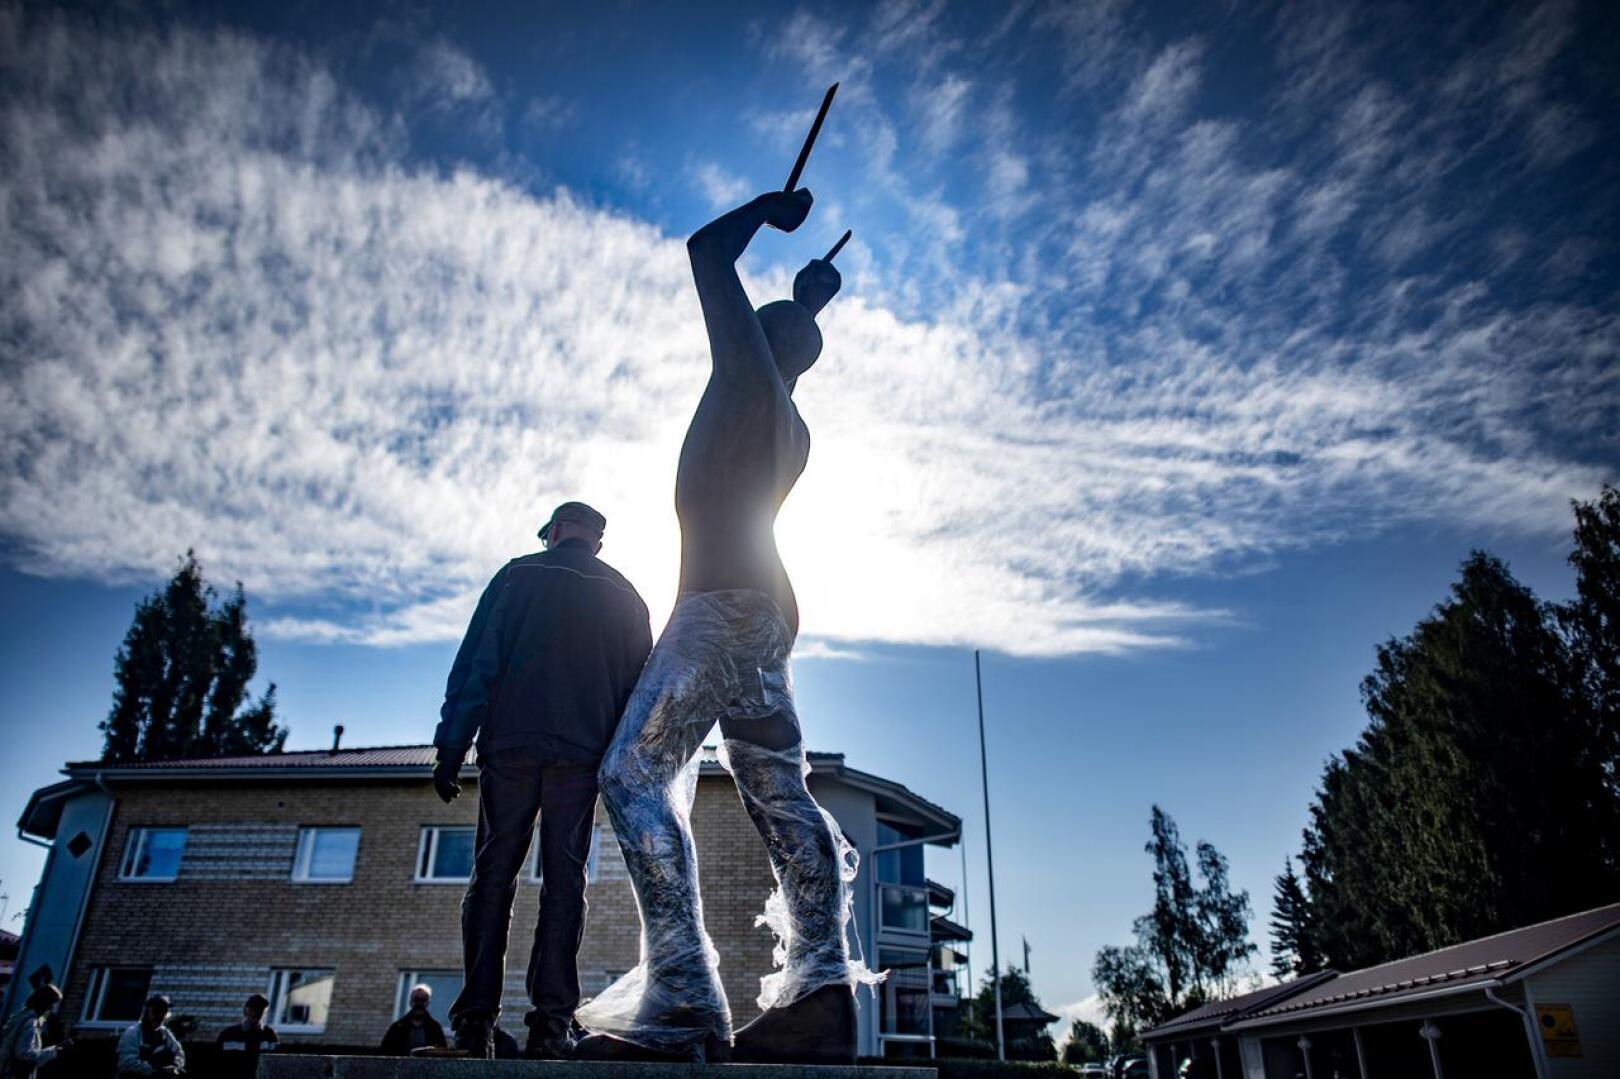 Seppo Kalliokosken veistämä ja elokuussa 2020 paljastettu Mika Myllylän patsas on noussut kohun keskiöön Haapajärvellä. Kuvassa patsas on juuri asennettu sijoilleen. Kaikki kannattavat patsasta, mutta Kiilat ei halua, että sitä rahoitetaan valmennus- ja kilpailutoiminnasta.